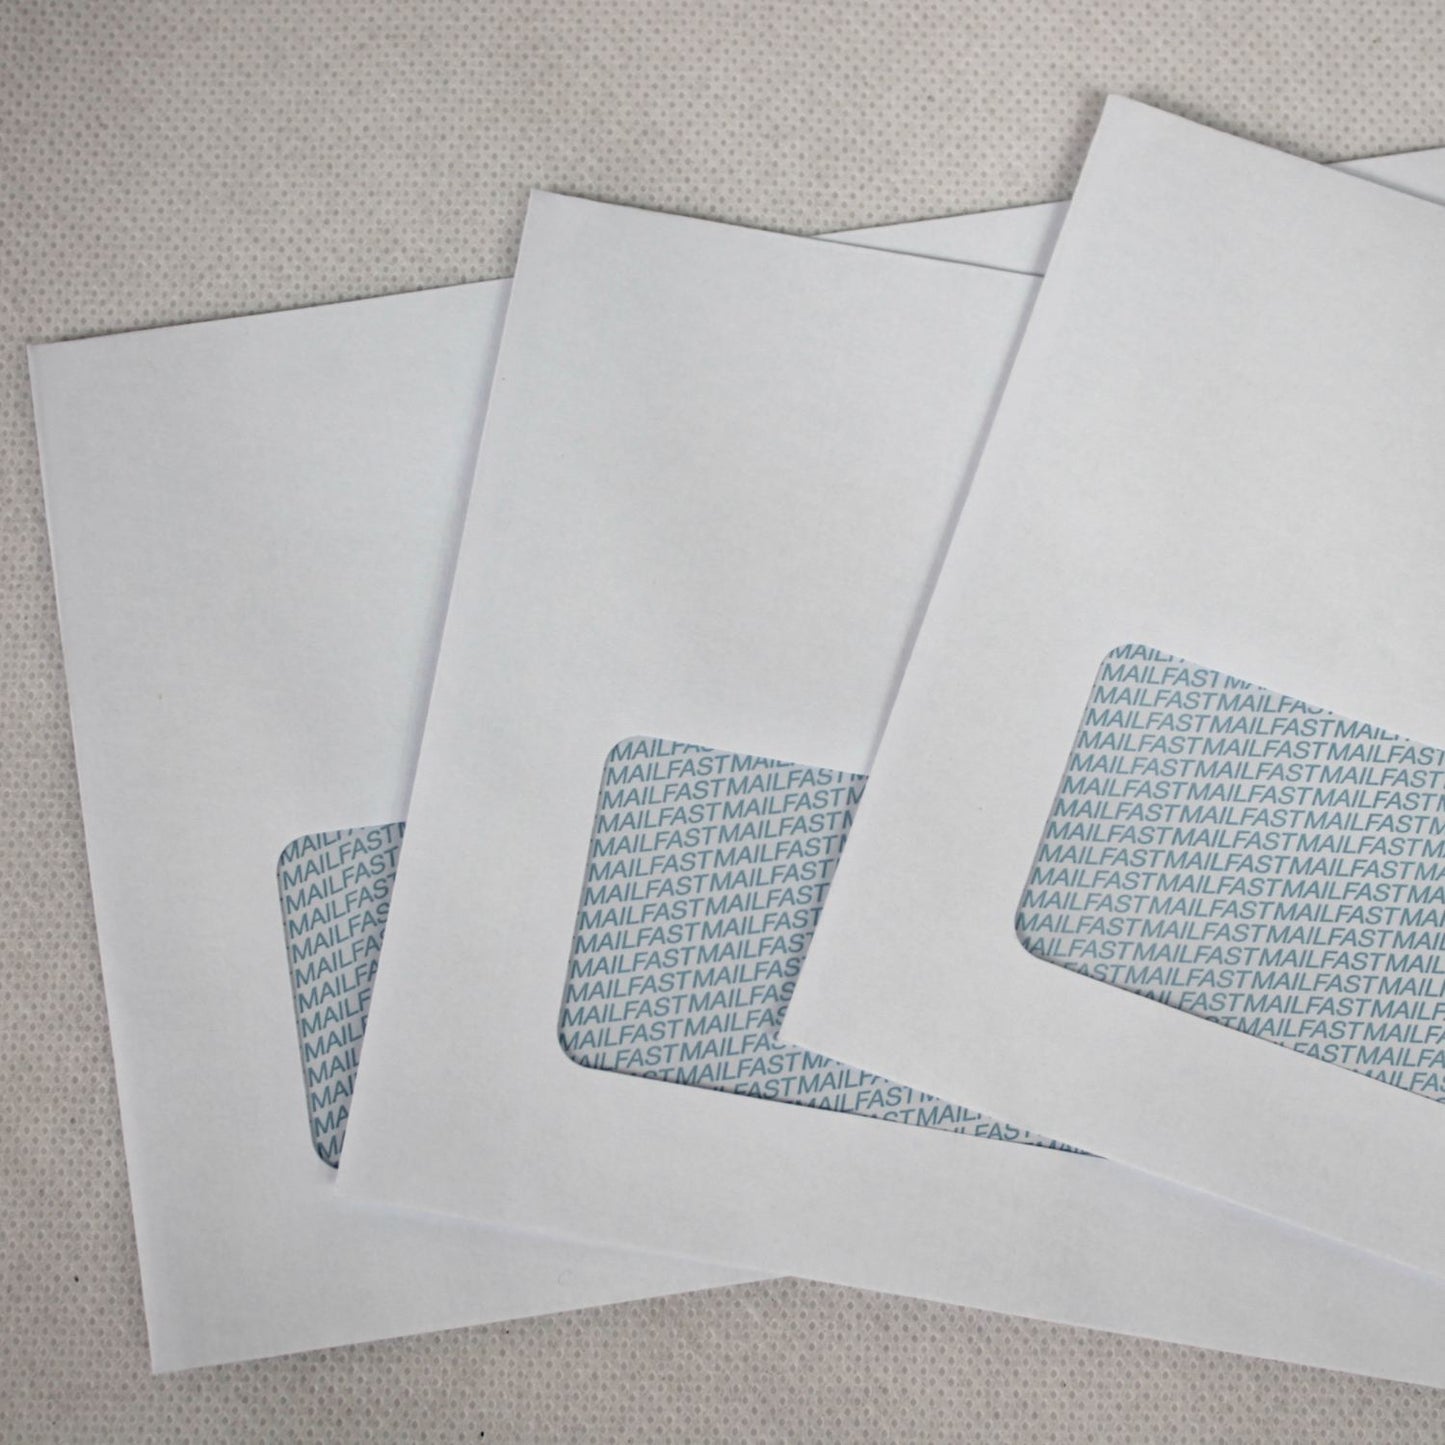 111x235mm DL+ White Gummed Envelopes (Window 35x90mm)